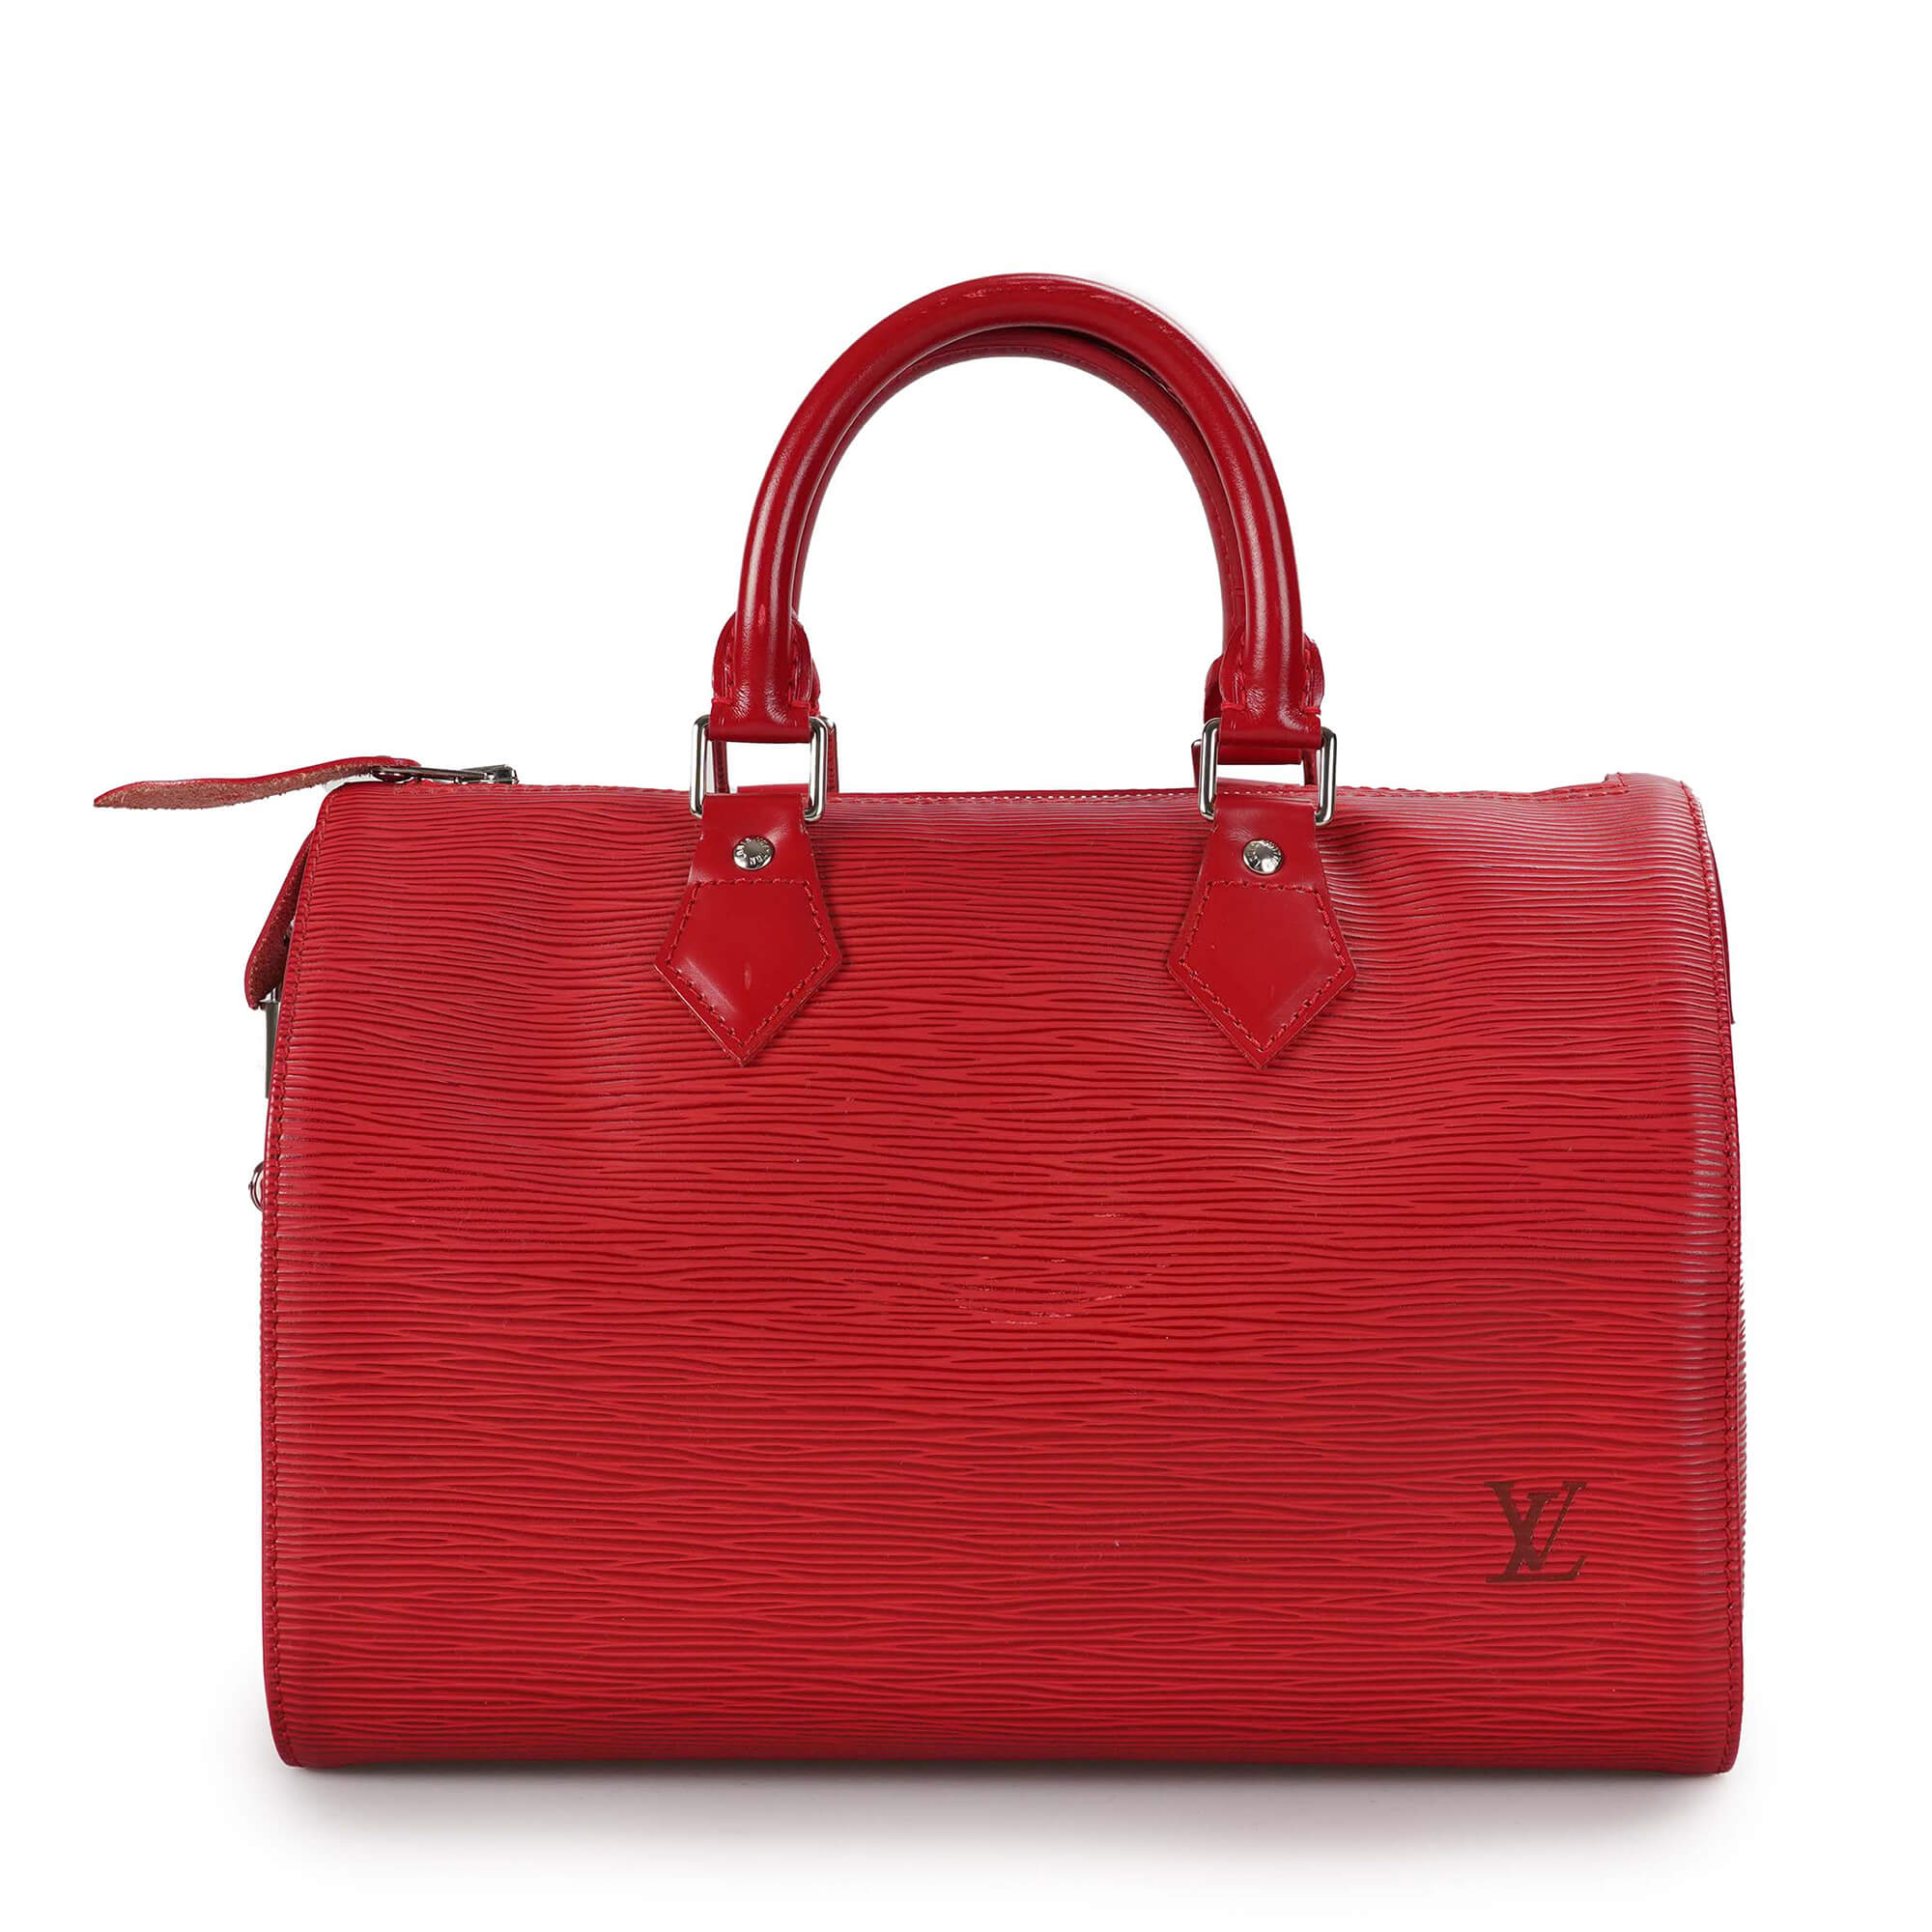 Louis Vuitton - Red Epi Leather Speedy 25 Bag 